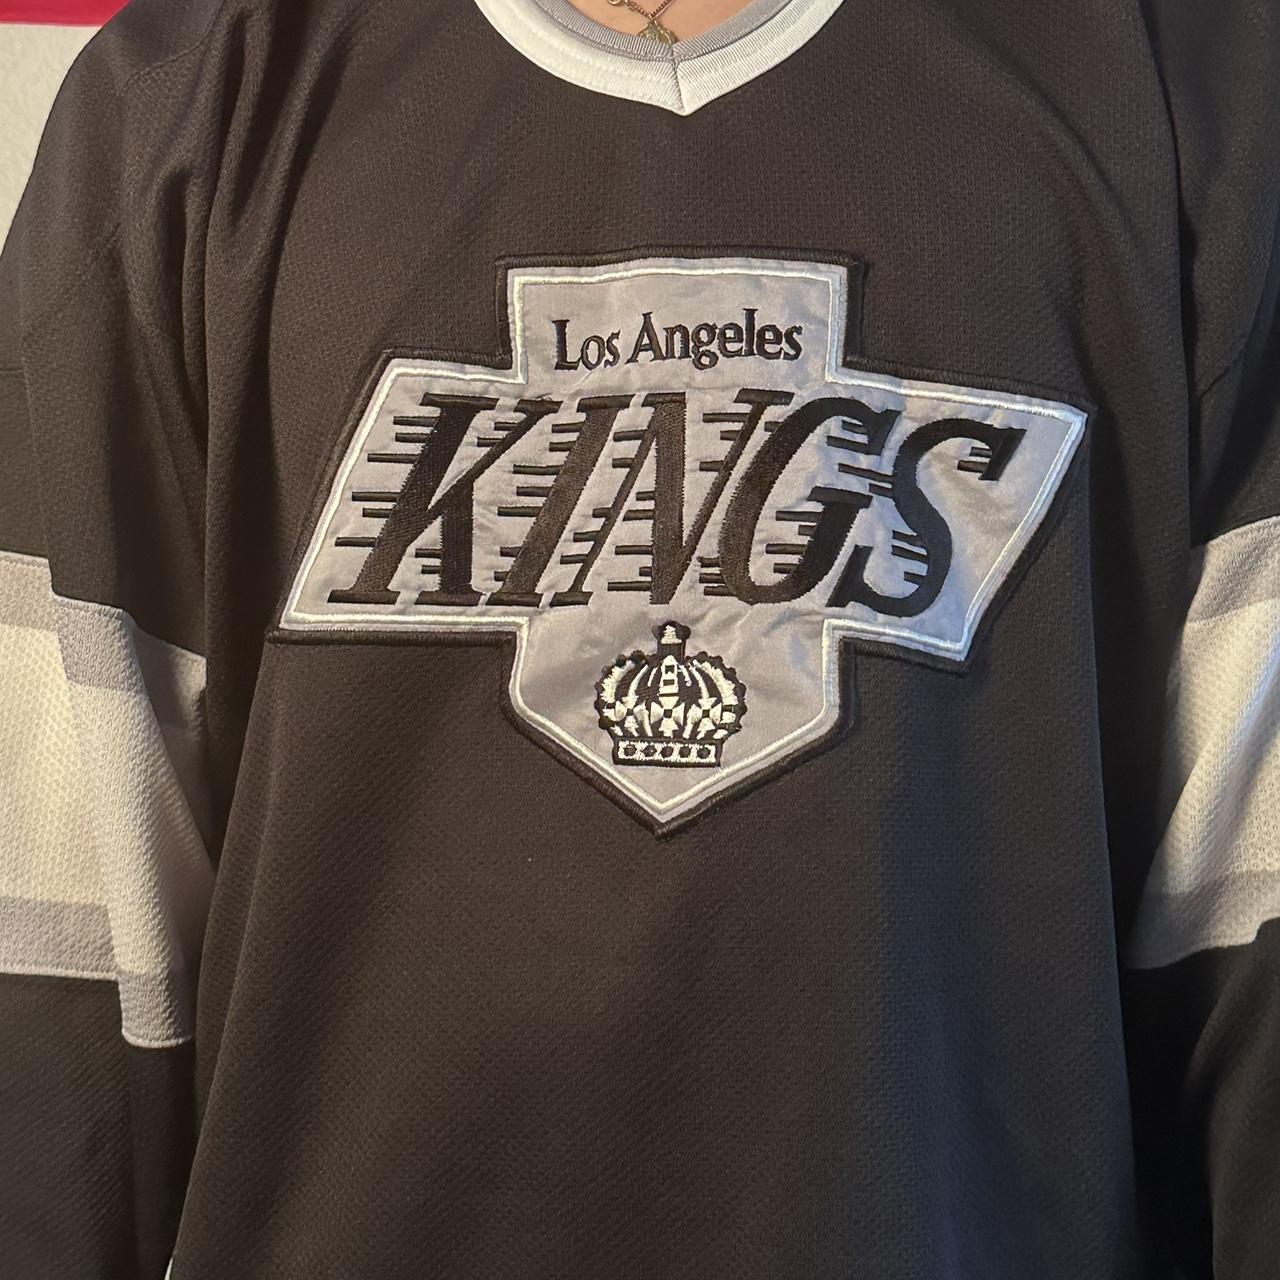 Vintage Starter Los Angeles Kings L hoodie #starter - Depop